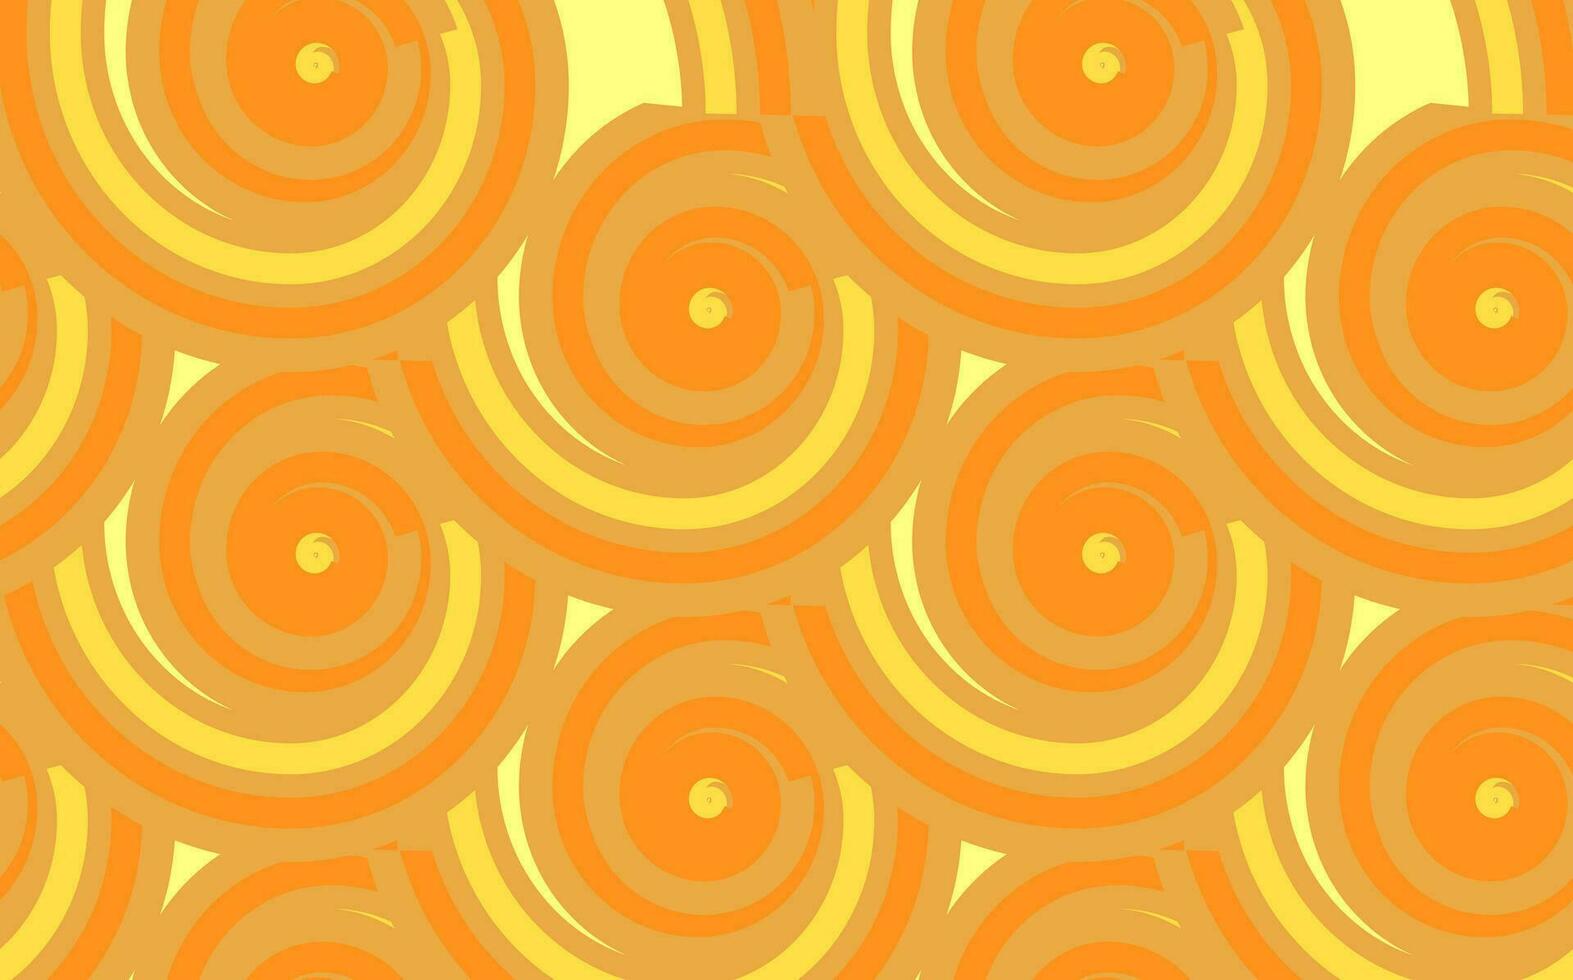 Hand gezeichnet asiatisch japanisch Ramen Nudel nahtlos Muster.Hintergrund mit Gelb und Orange Streifen.Pasta abstrakt Hintergrund Konzept.Makkaroni Gelb Poster. vektor